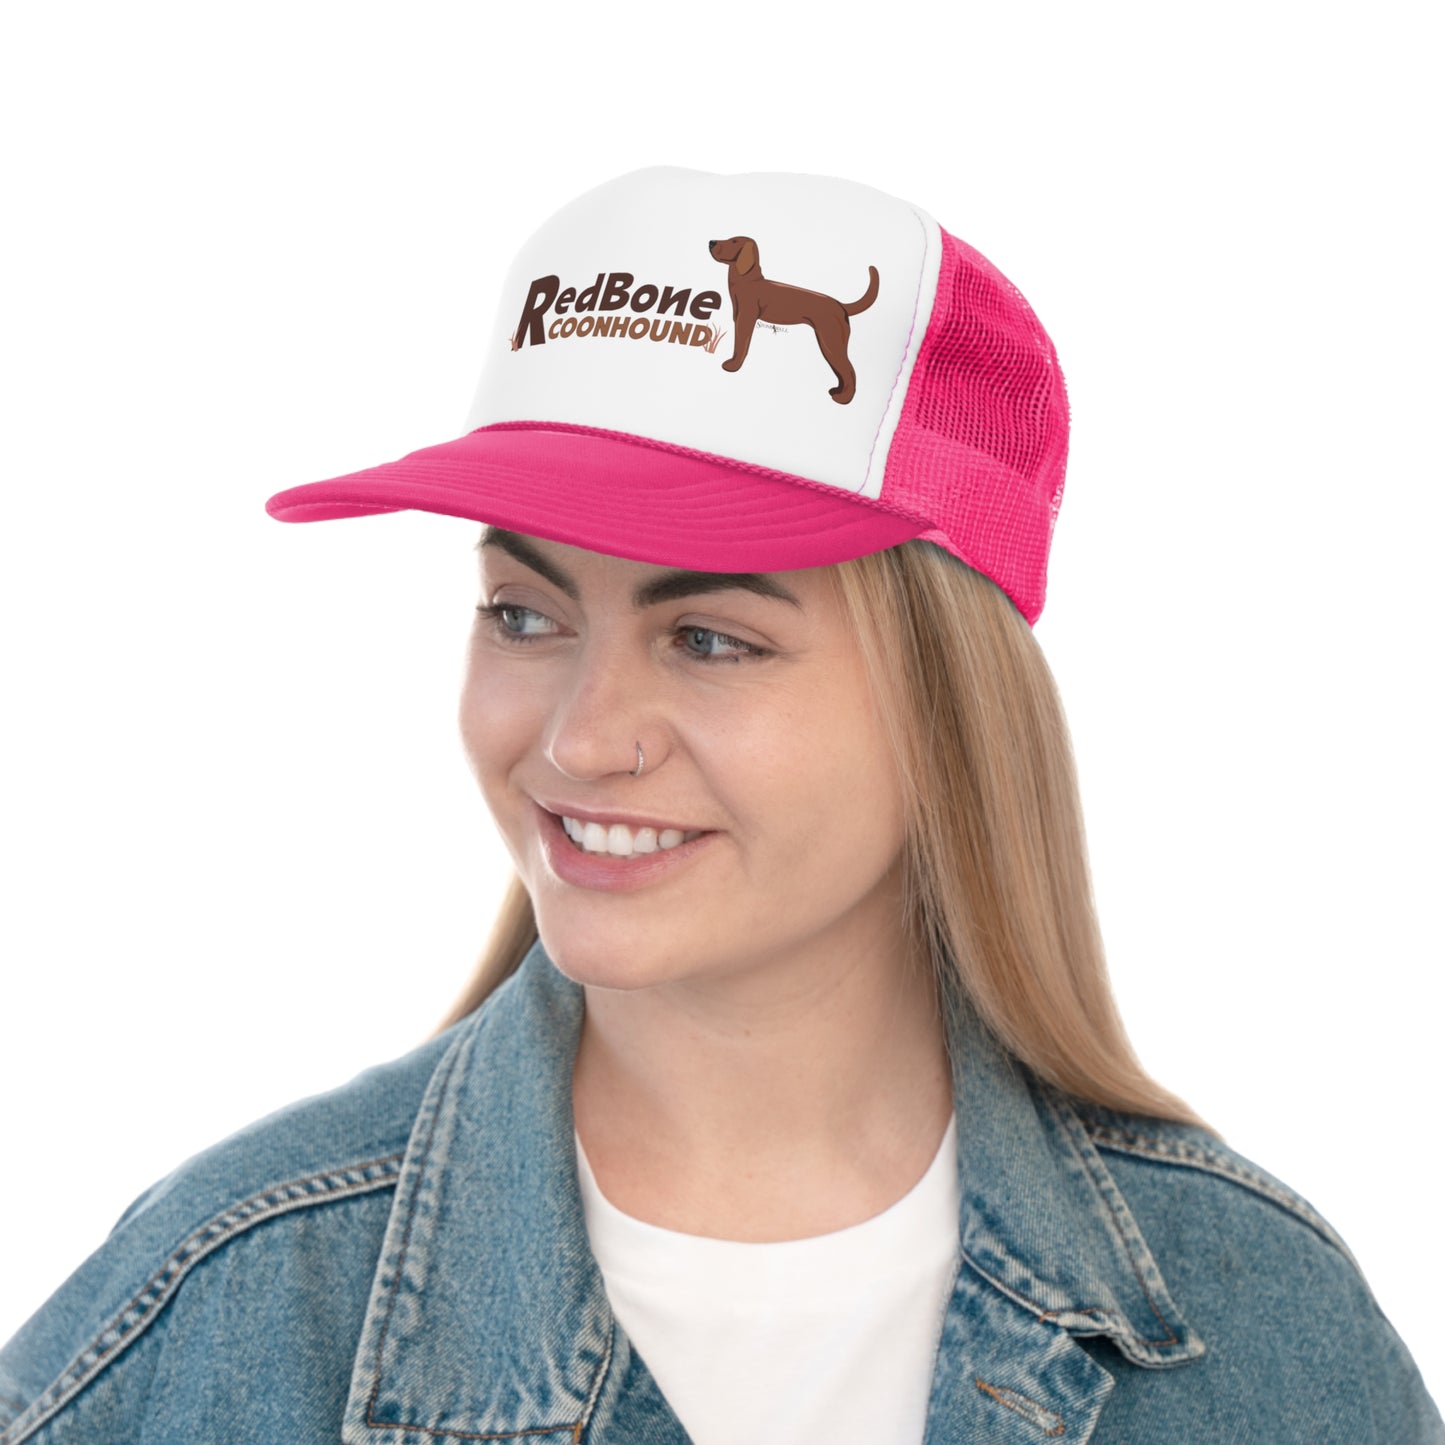 Redbone Coonhound Trucker hat